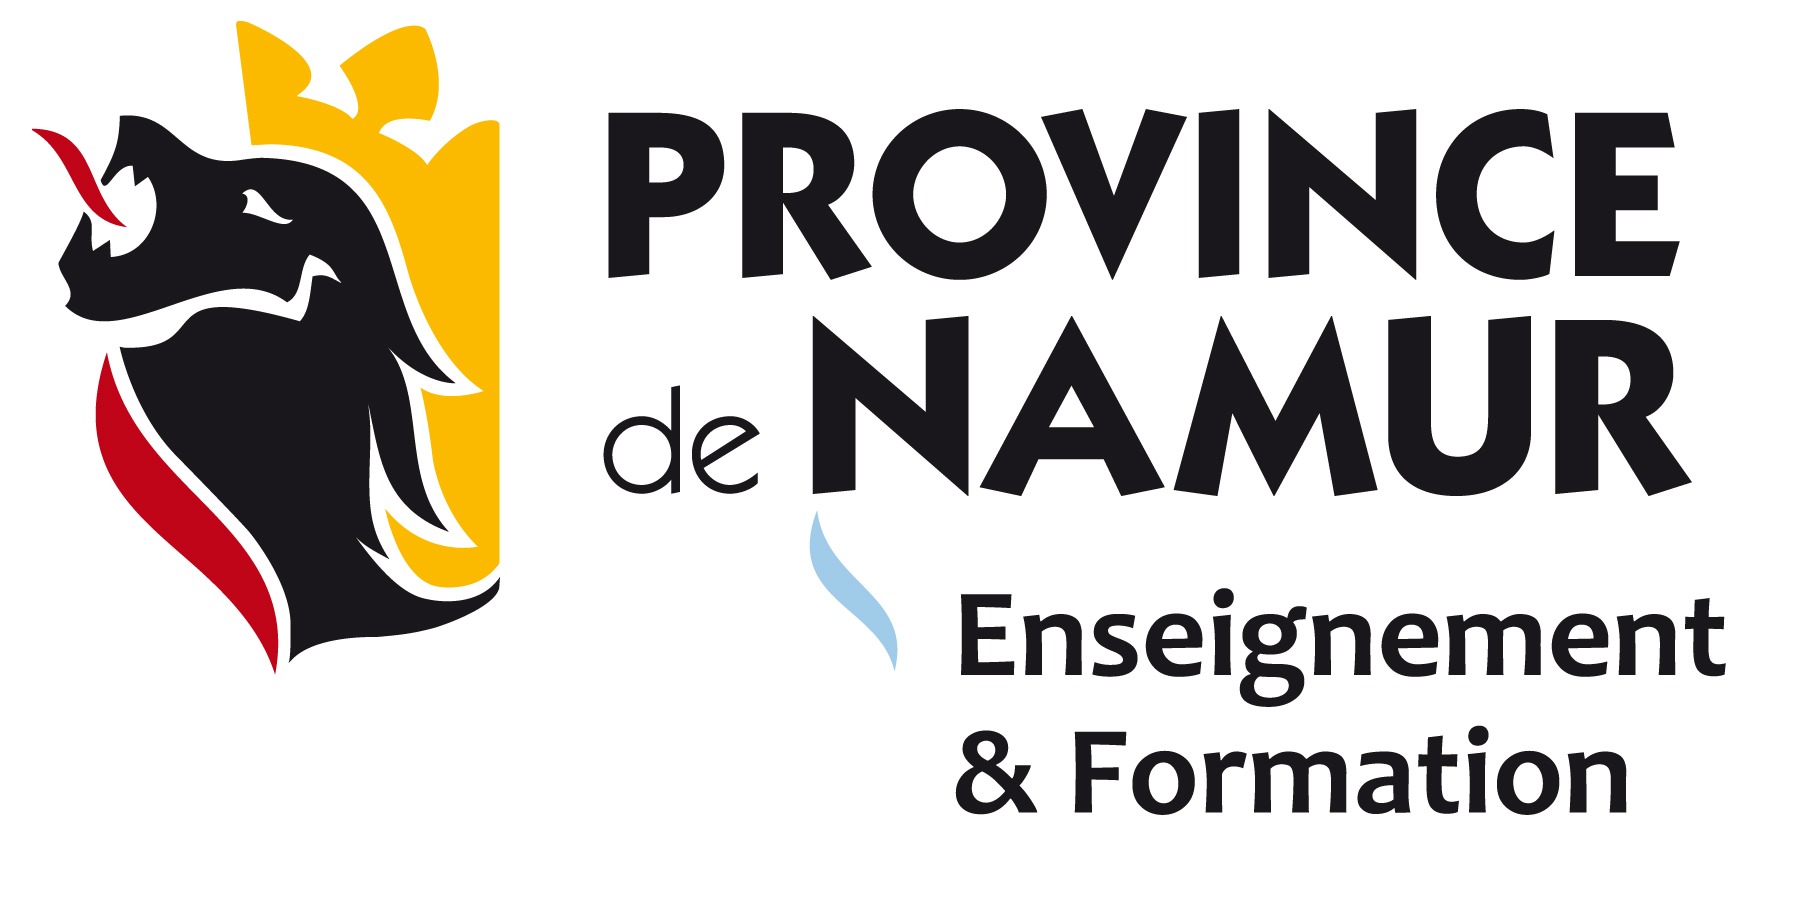 Province de Namur logo